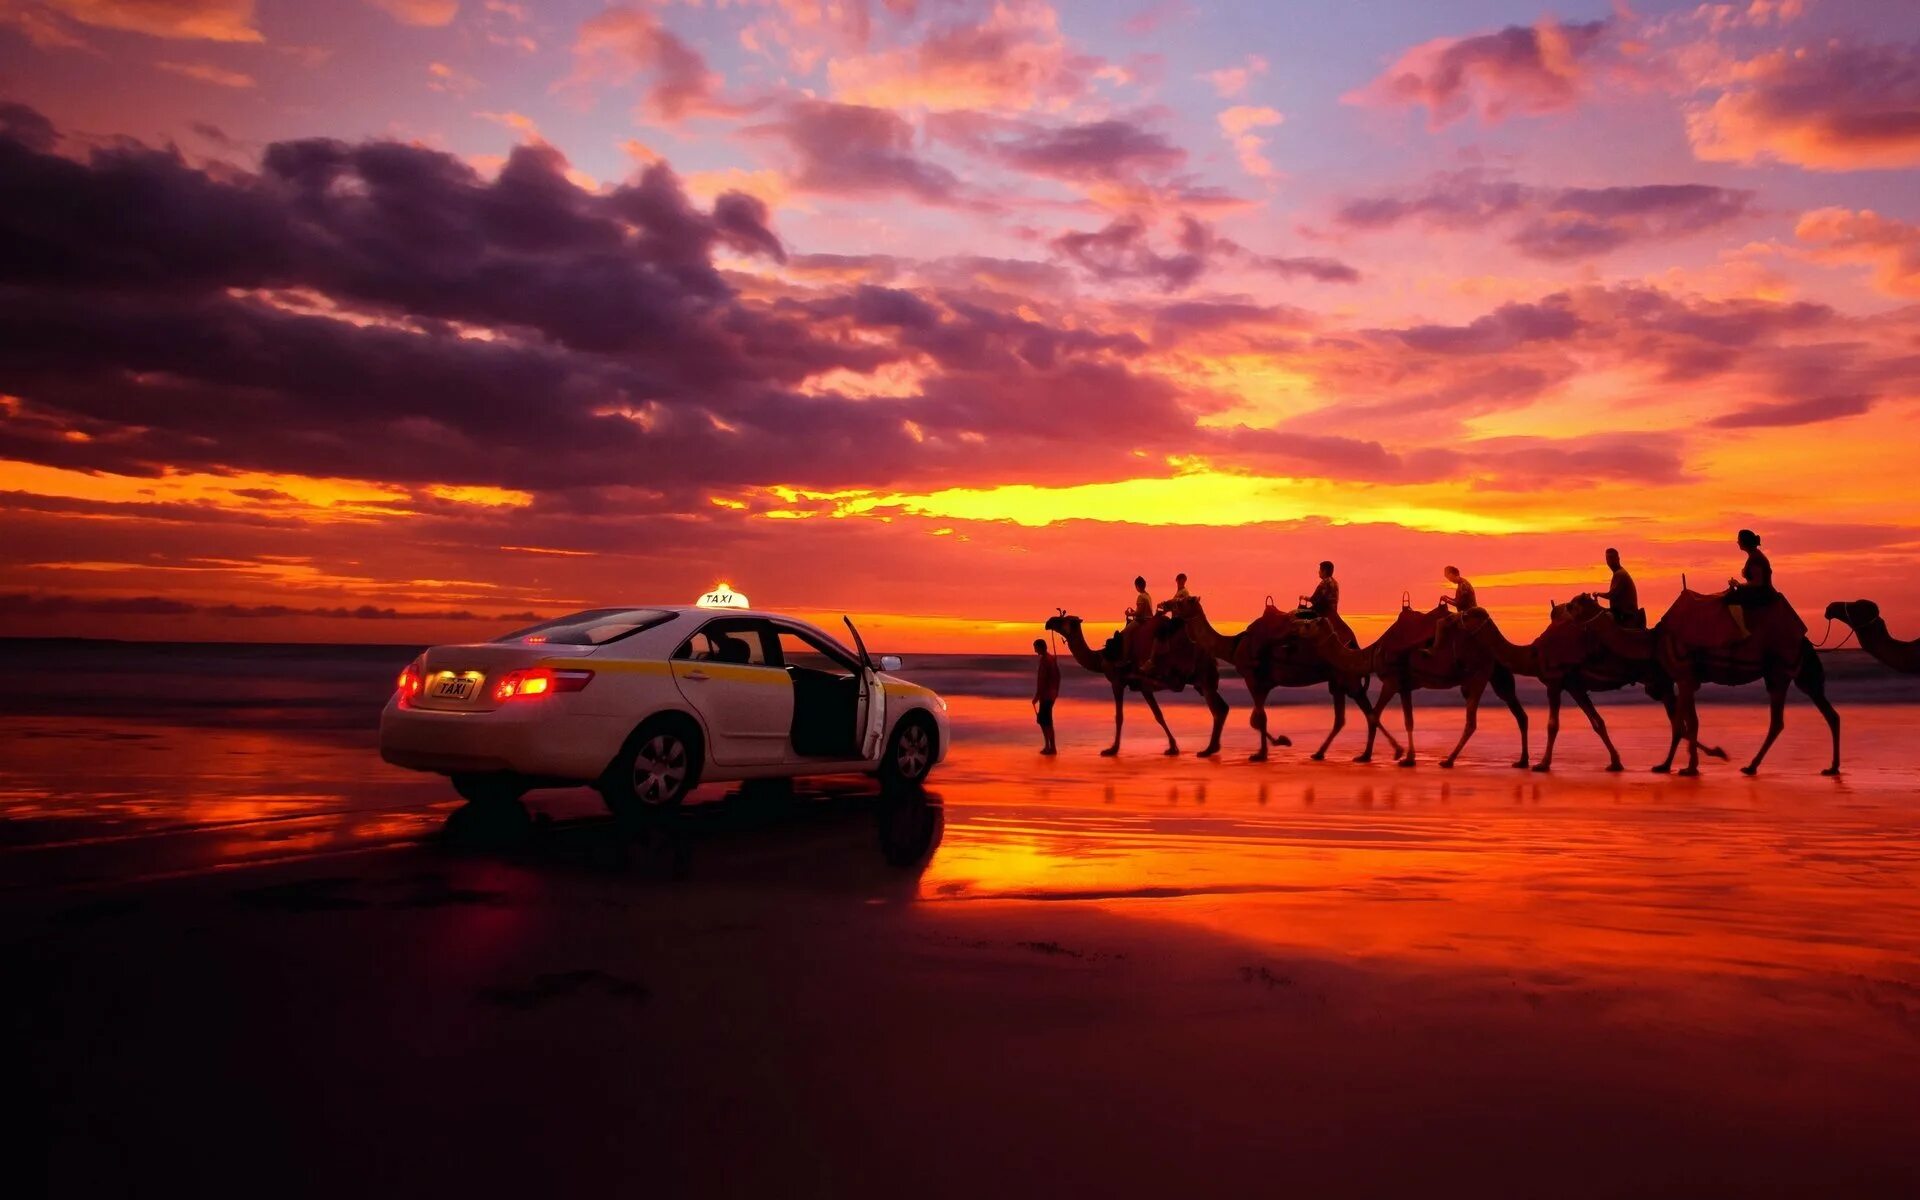 Небо караван. Машина на фоне заката. Верблюд в пустыне. Закат в пустыне. Караван на закате.